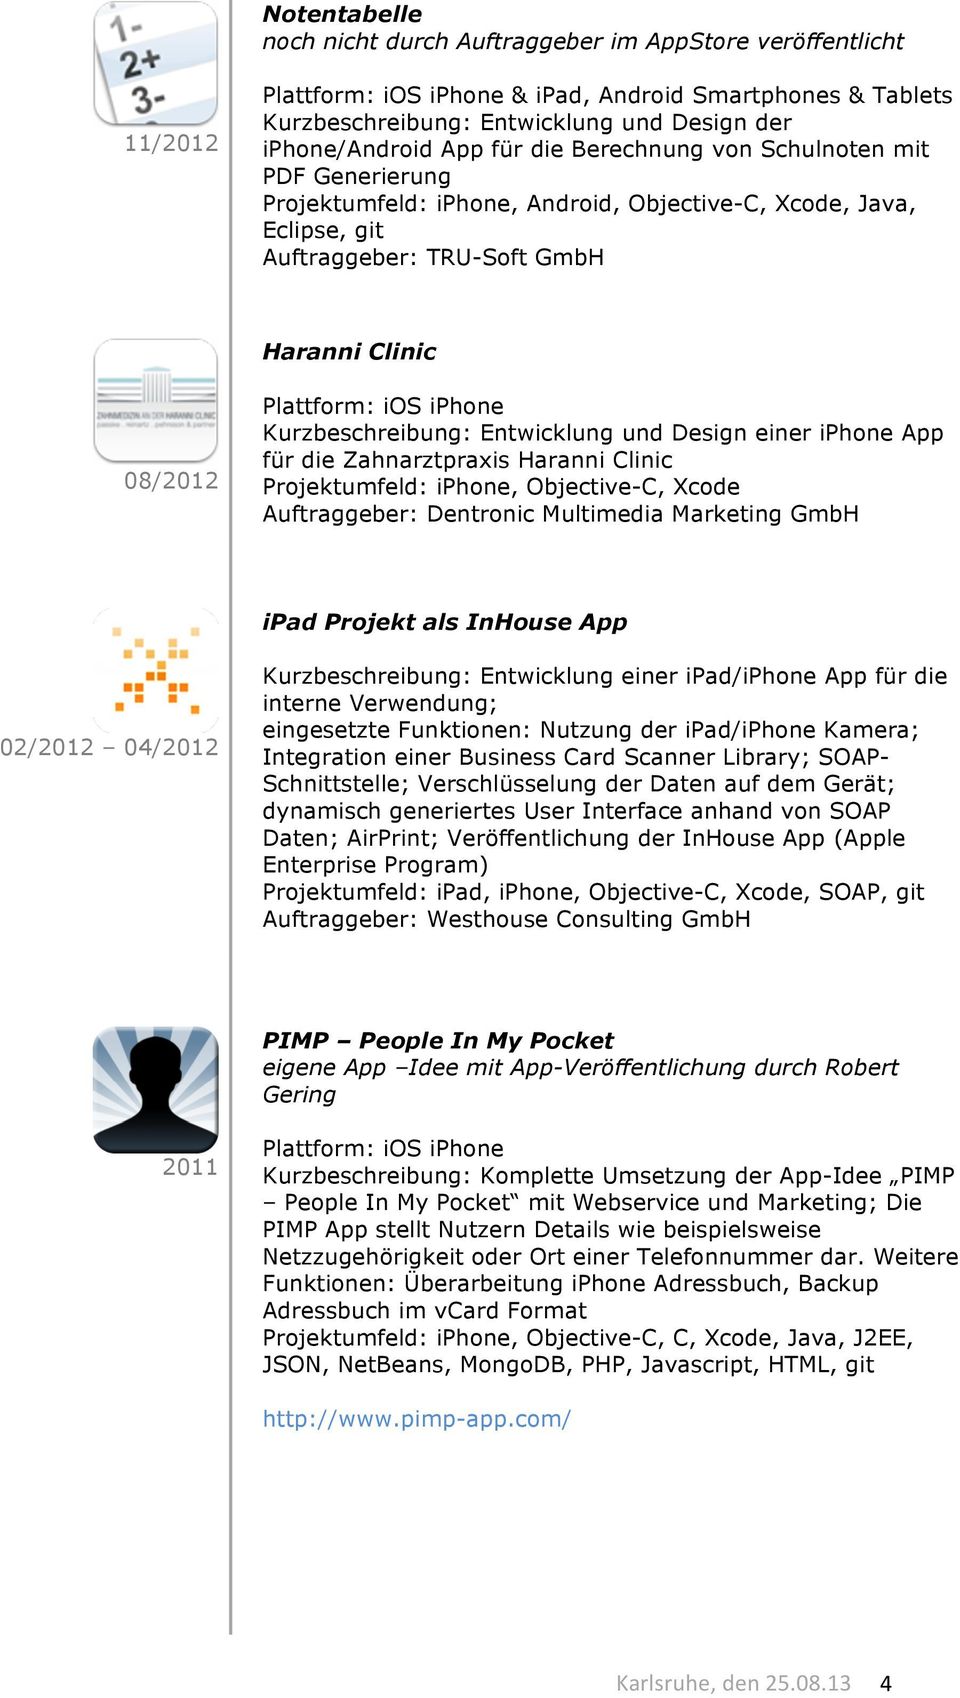 Objective-C, Xcode ipad Projekt als InHouse App 02/2012 04/2012 Kurzbeschreibung: Entwicklung einer ipad/iphone App für die interne Verwendung; eingesetzte Funktionen: Nutzung der ipad/iphone Kamera;